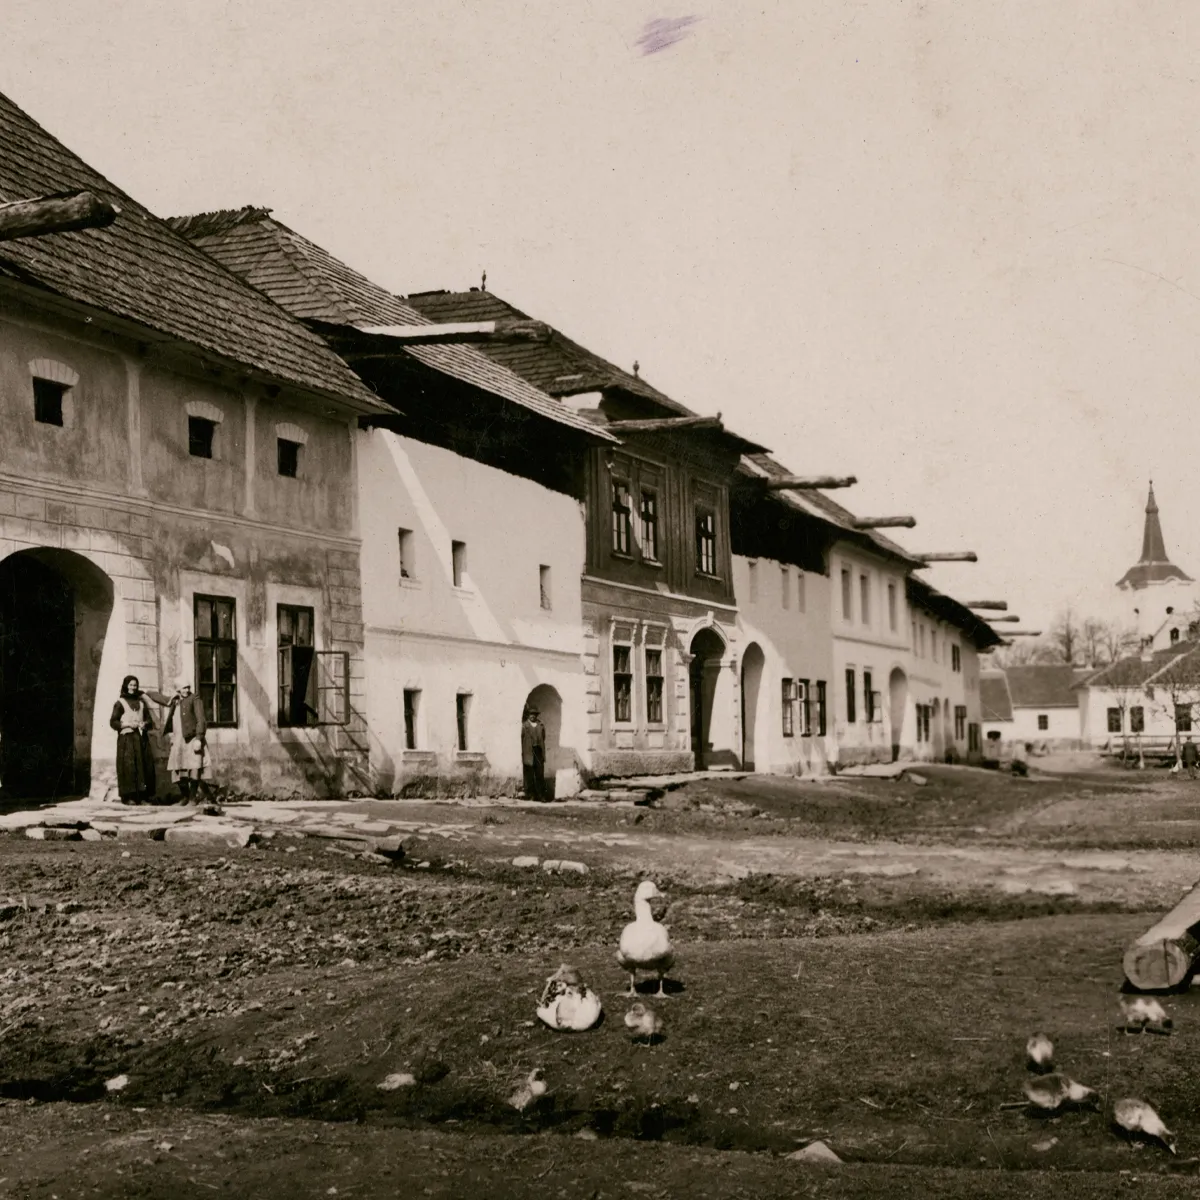 Čiernobiela fotografia oredvojnovej obce Tvarožná. Domy sa nachádzajú v ľavej časti fotky, na ceste vidieť husy. V pozadí je kostol. Fotku zhotovil prof. Alfréd Grosz (1885 - 1973) niekedy v druhej štvrtine 20. storočia.